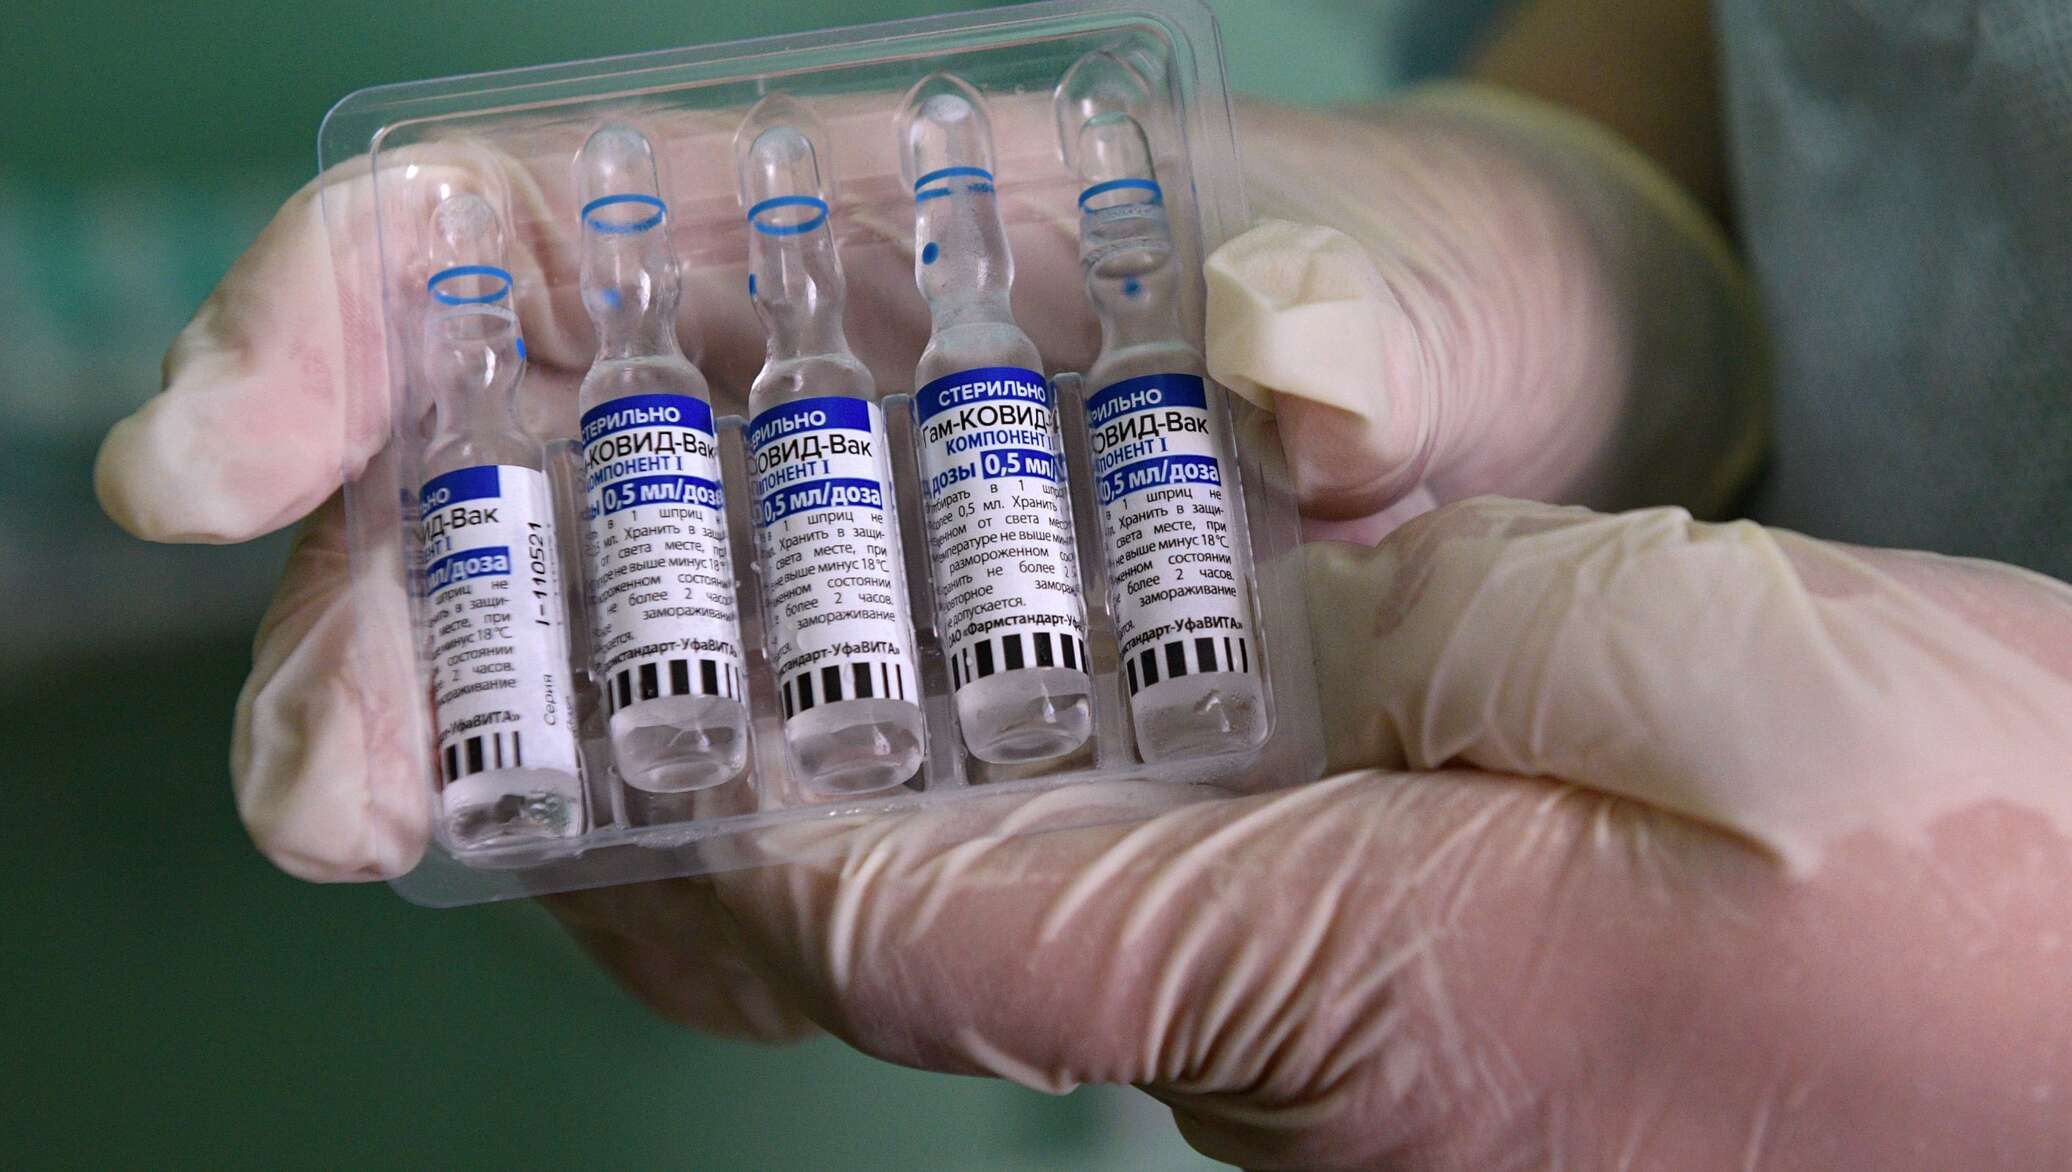 Вакцина спутник. Спутник v вакцина. Спутник v вакцина от коронавируса. Фото вакцины Спутник v от коронавируса. Ампула с вакциной.